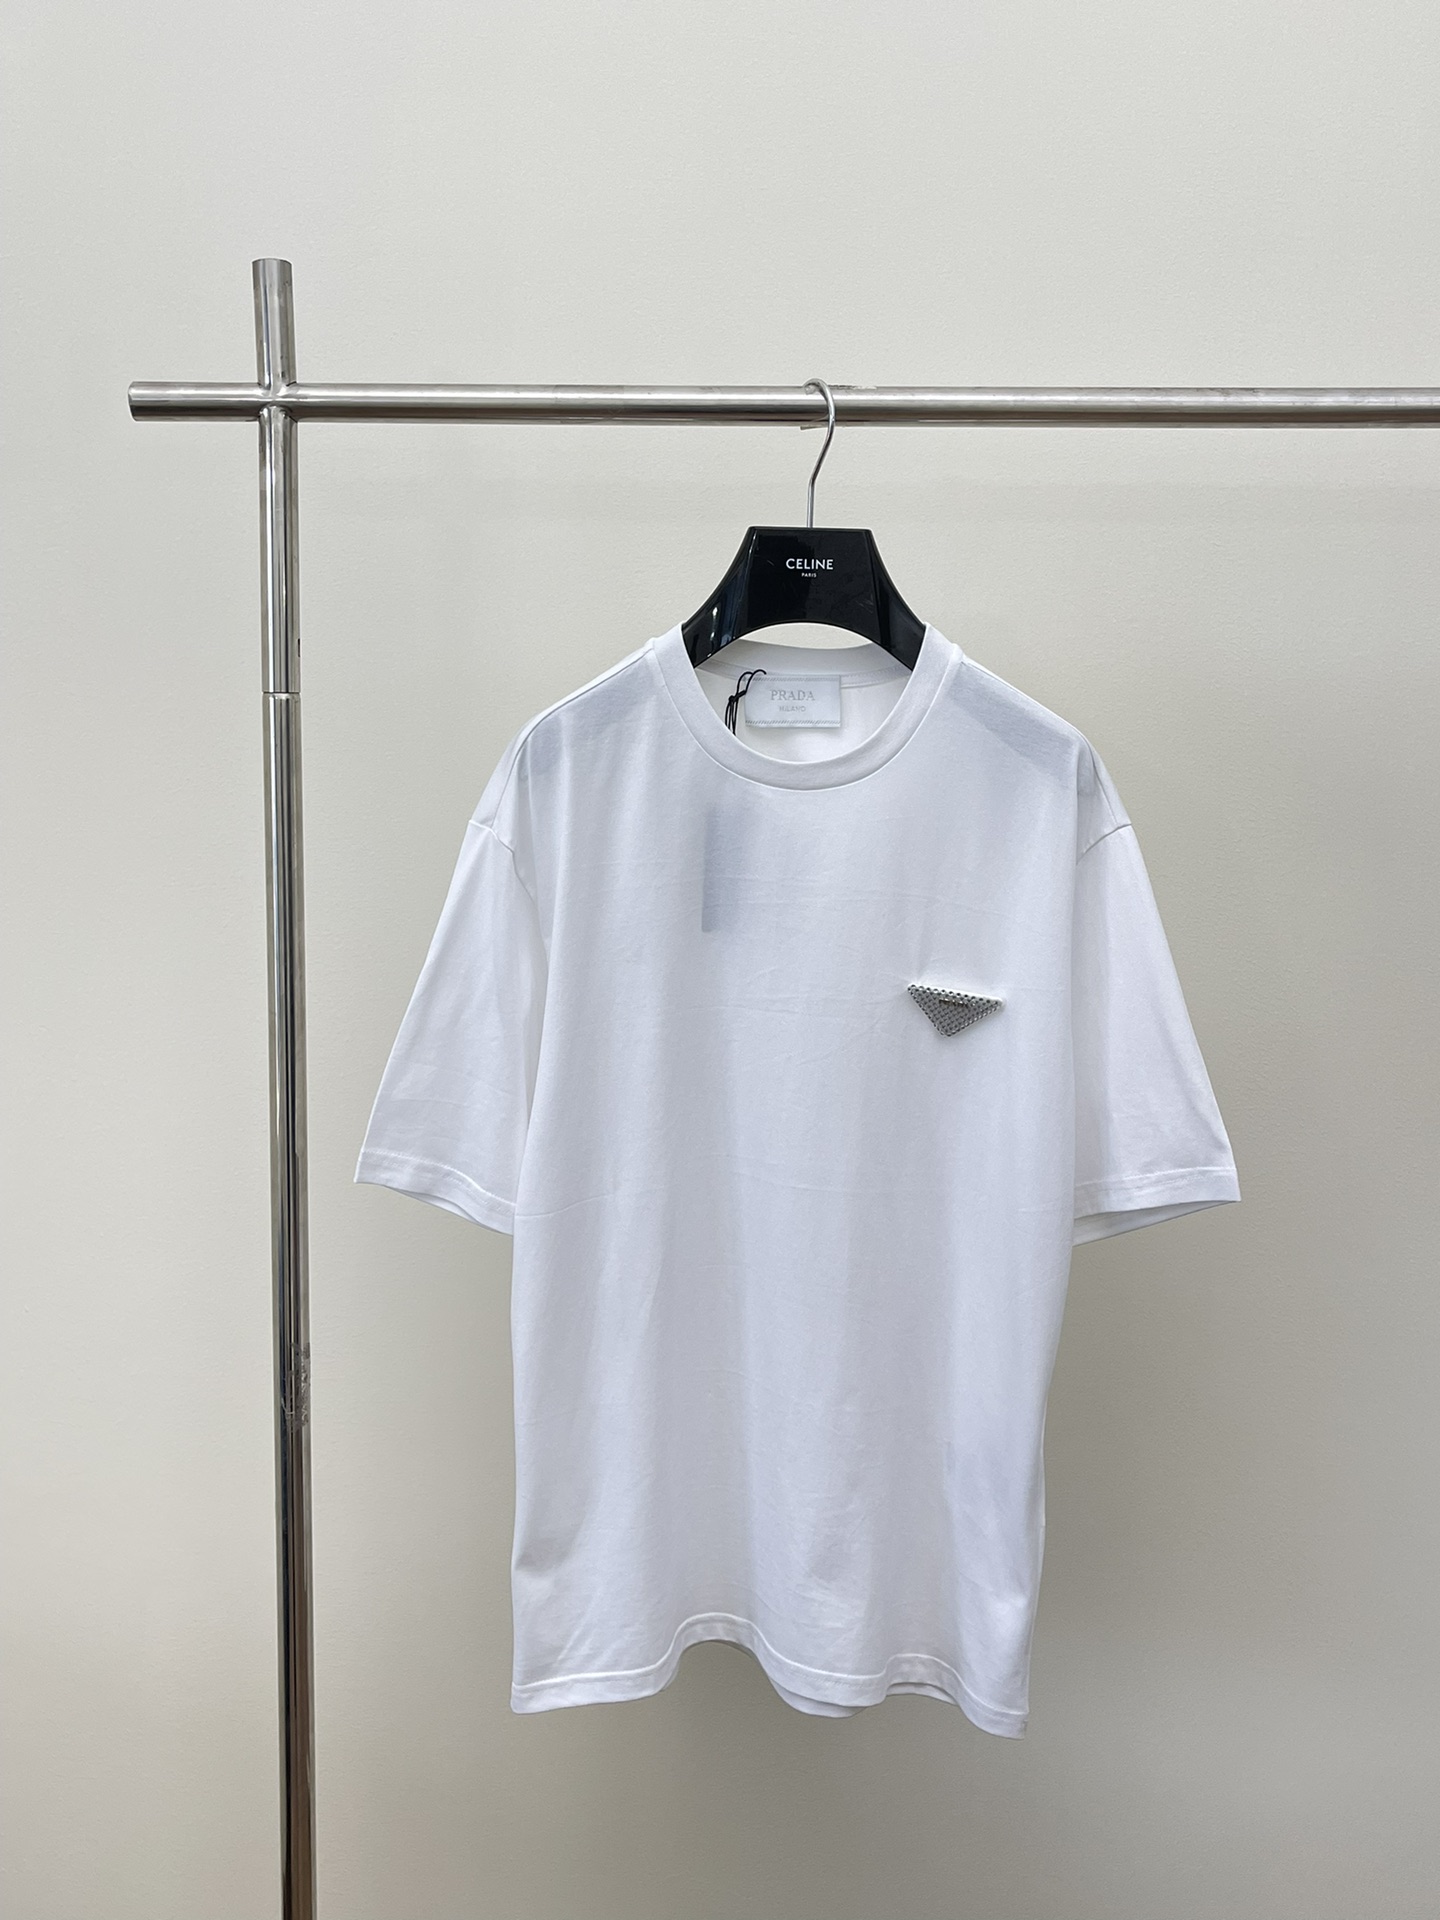 Prada Clothing T-Shirt High Quality 1:1 Replica
 Fashion Short Sleeve